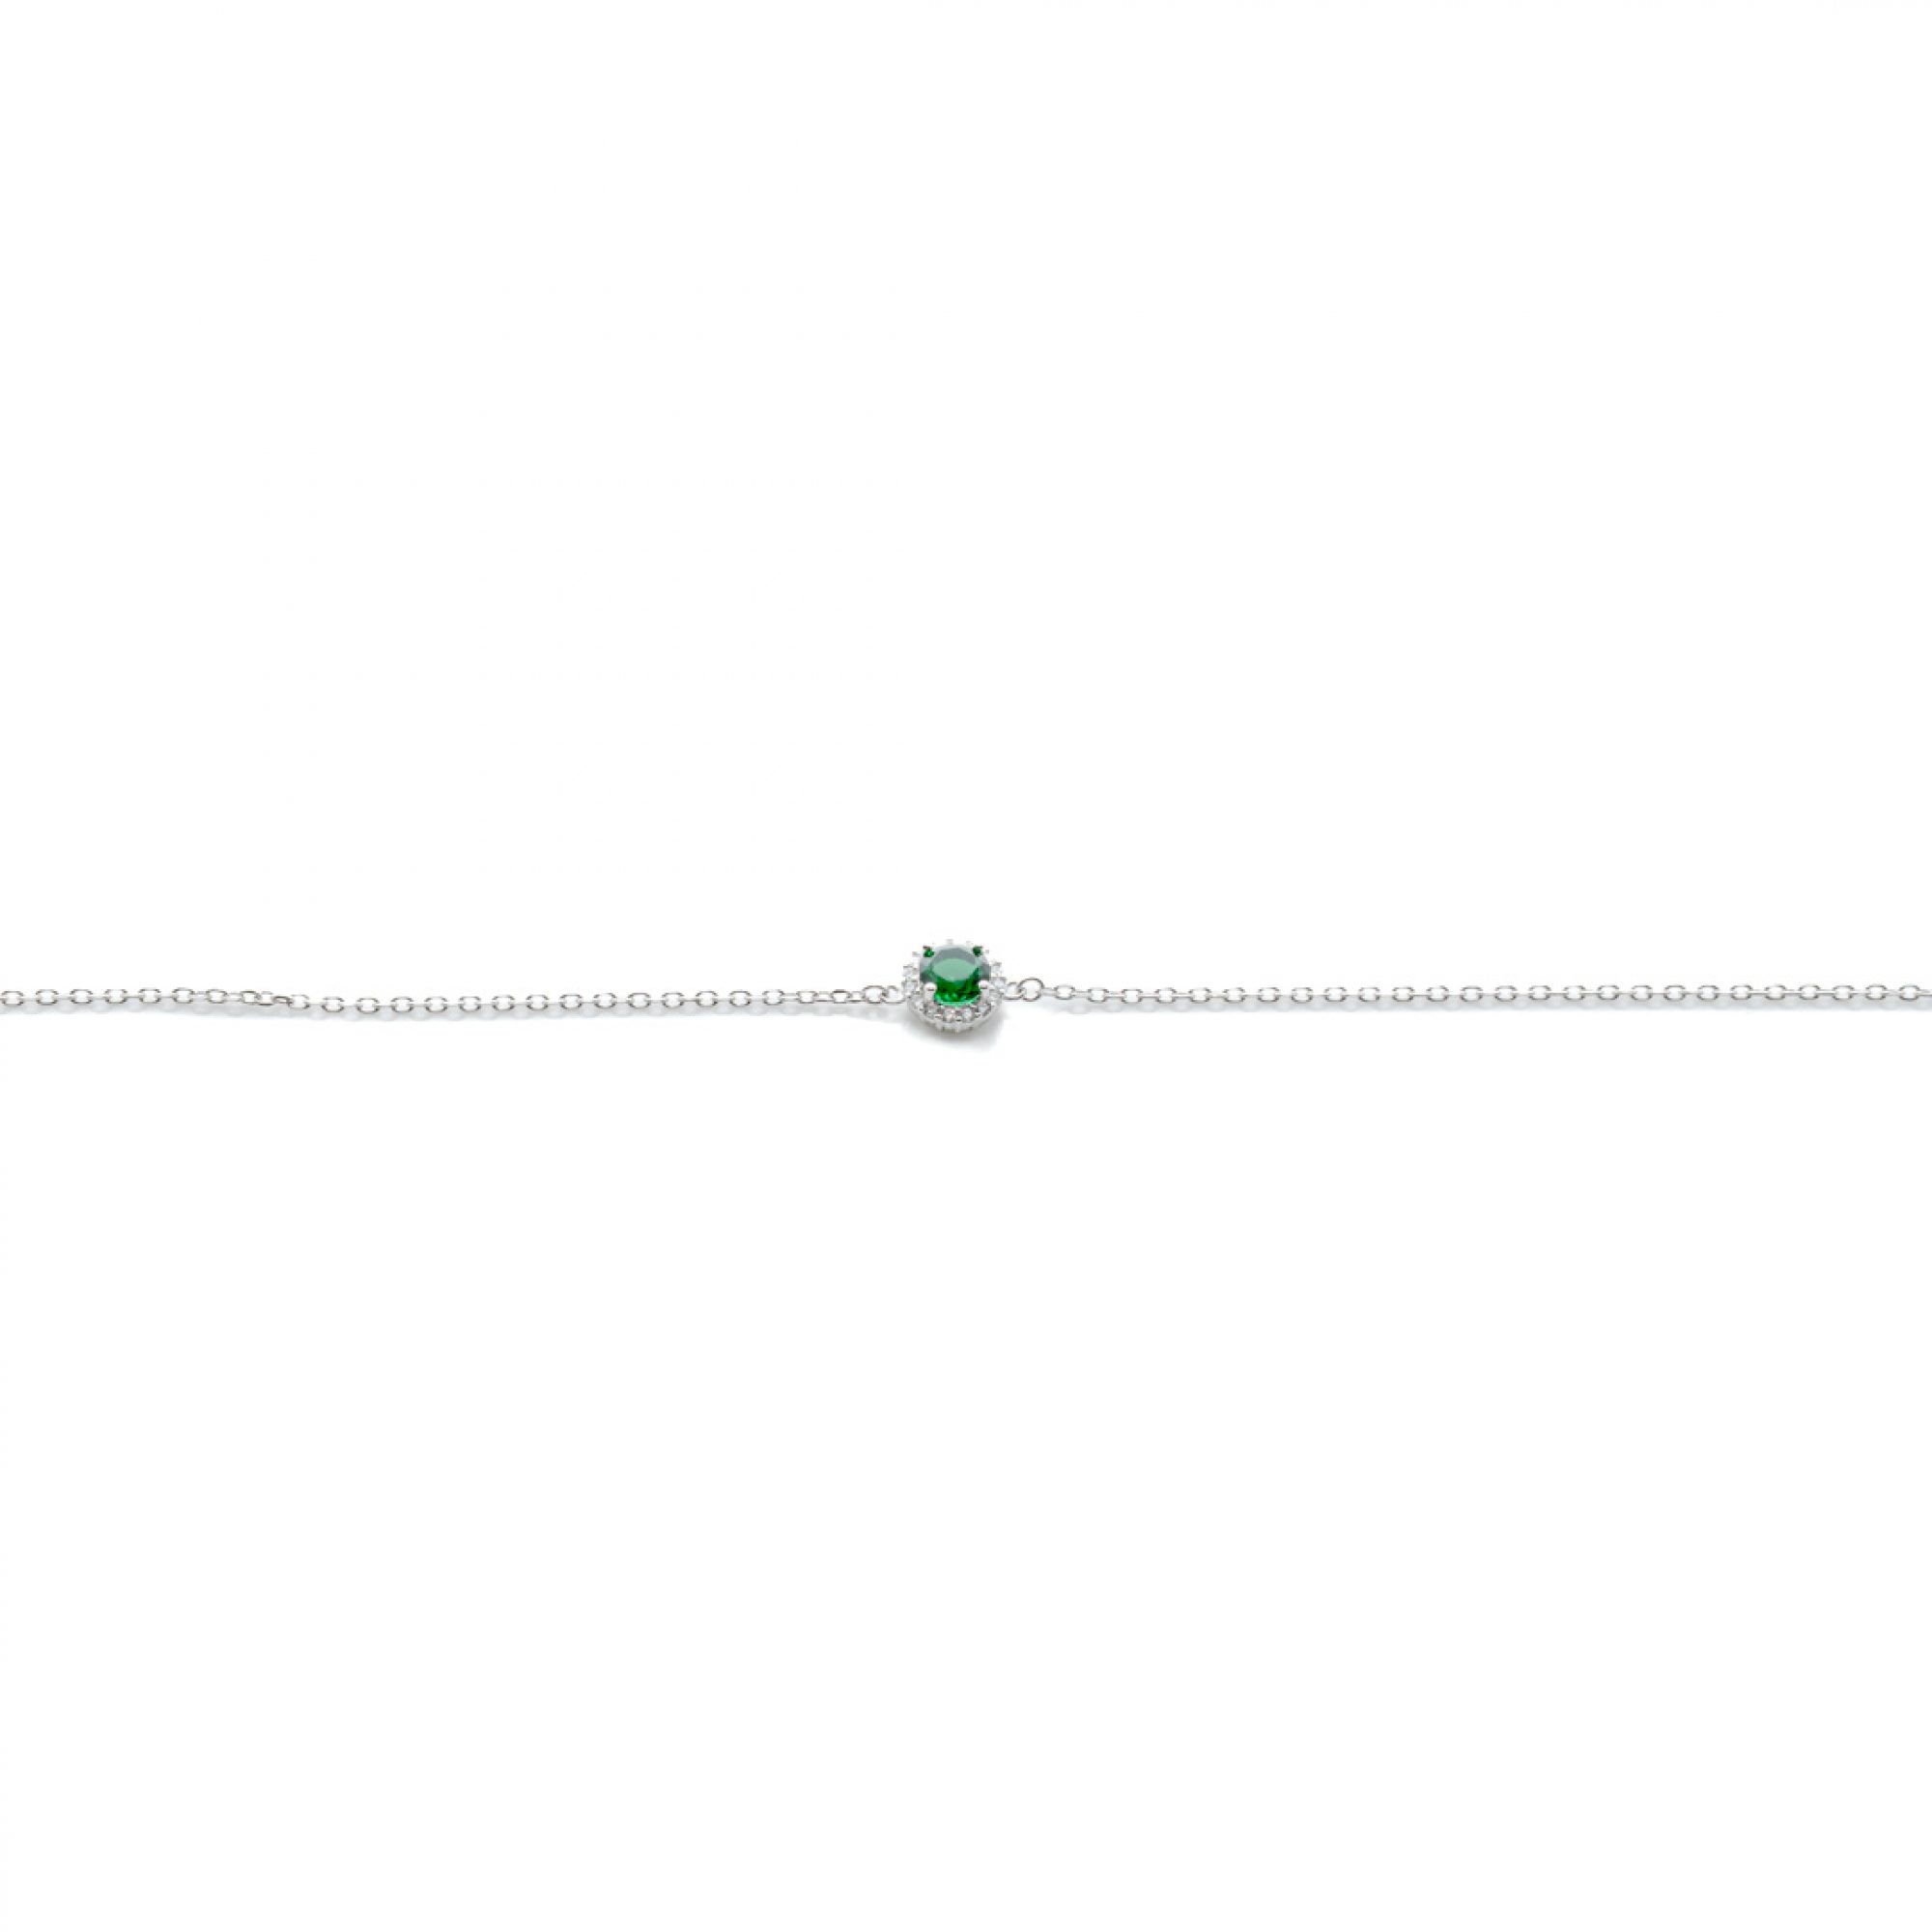 Bracelet with emerald and zircon stones